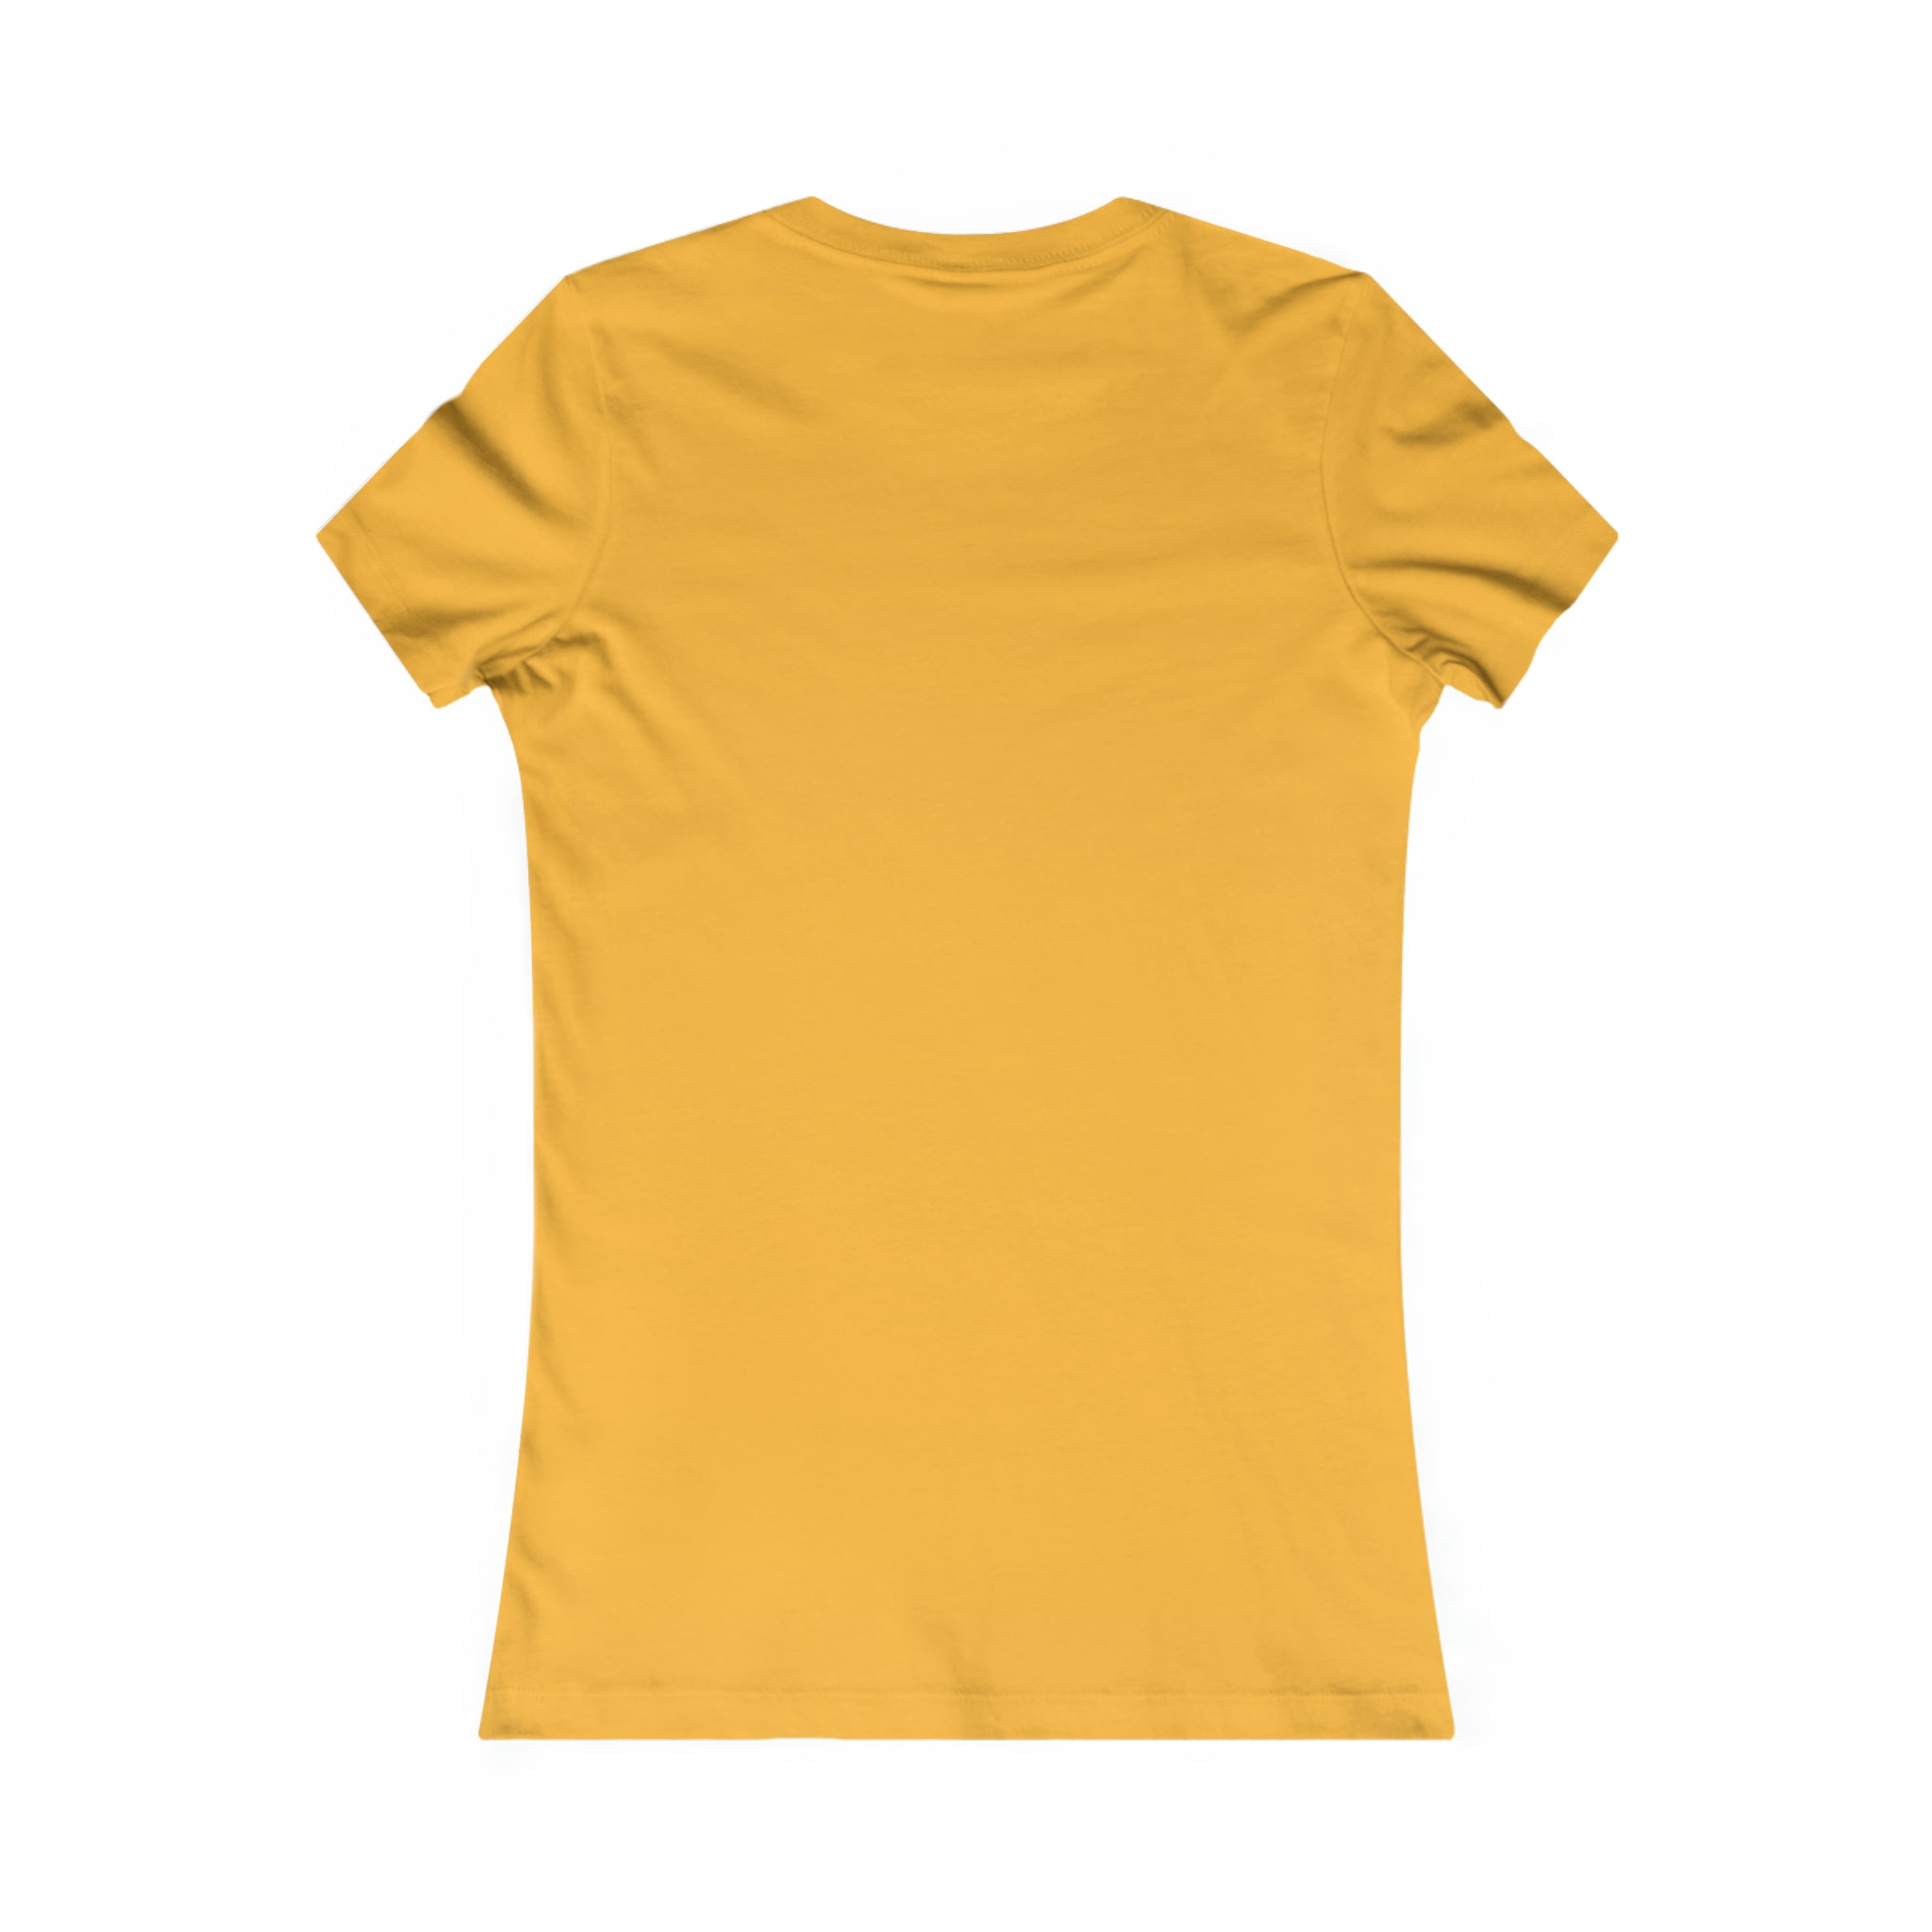 Khulgar Women's Crewneck T-shirt